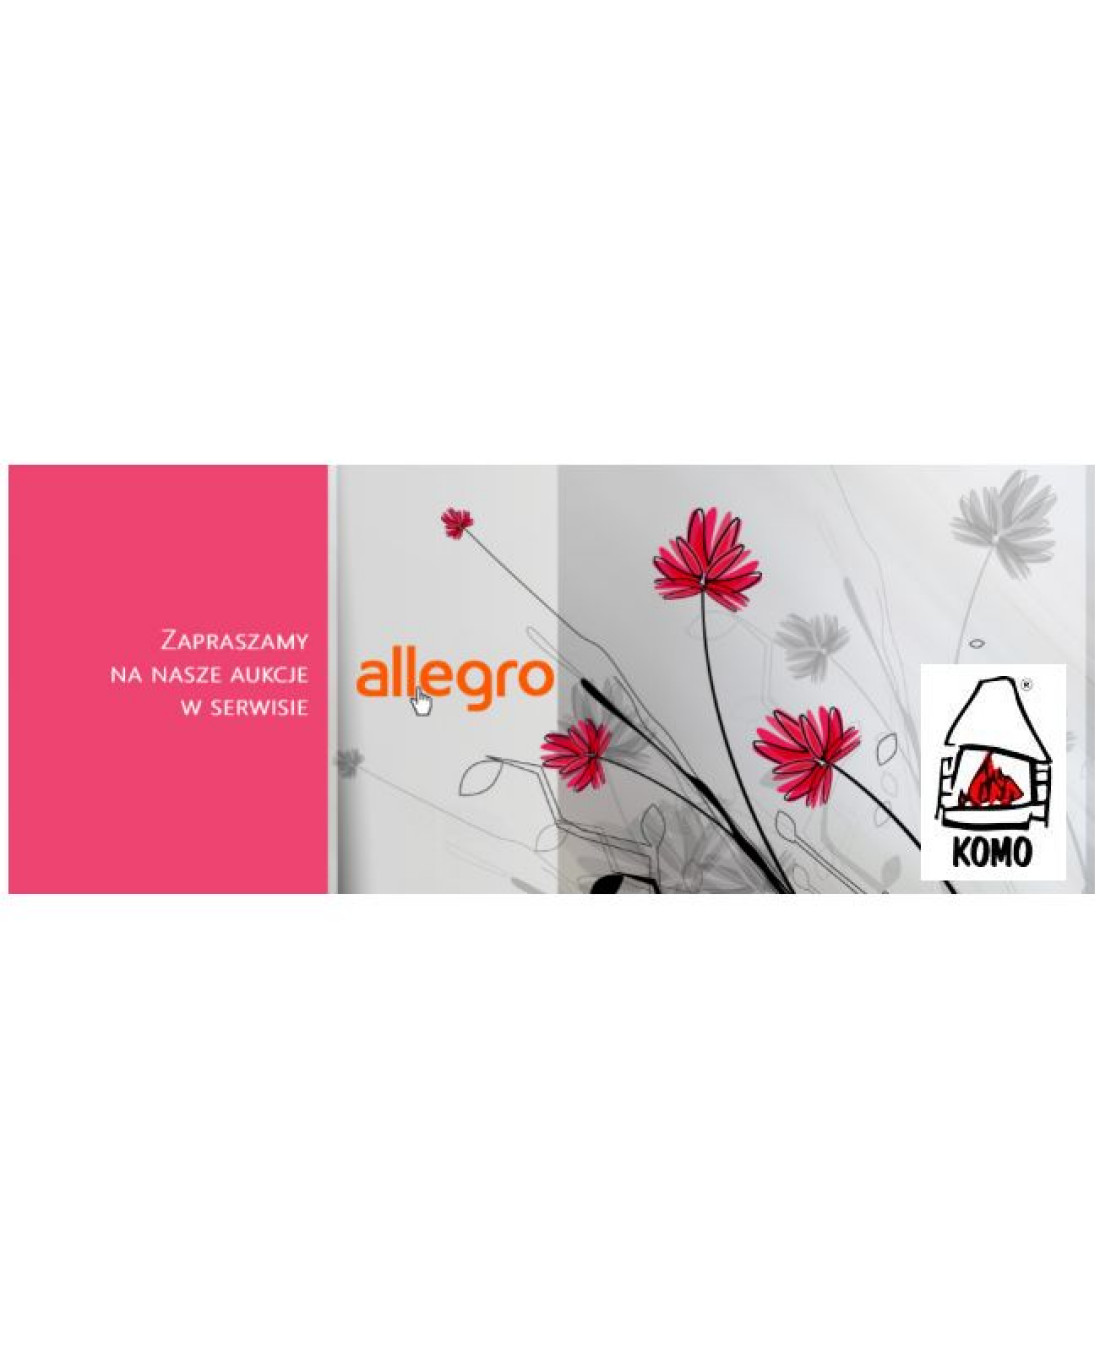 Firma KOMO zaprasza na swoje aukcje na Allegro